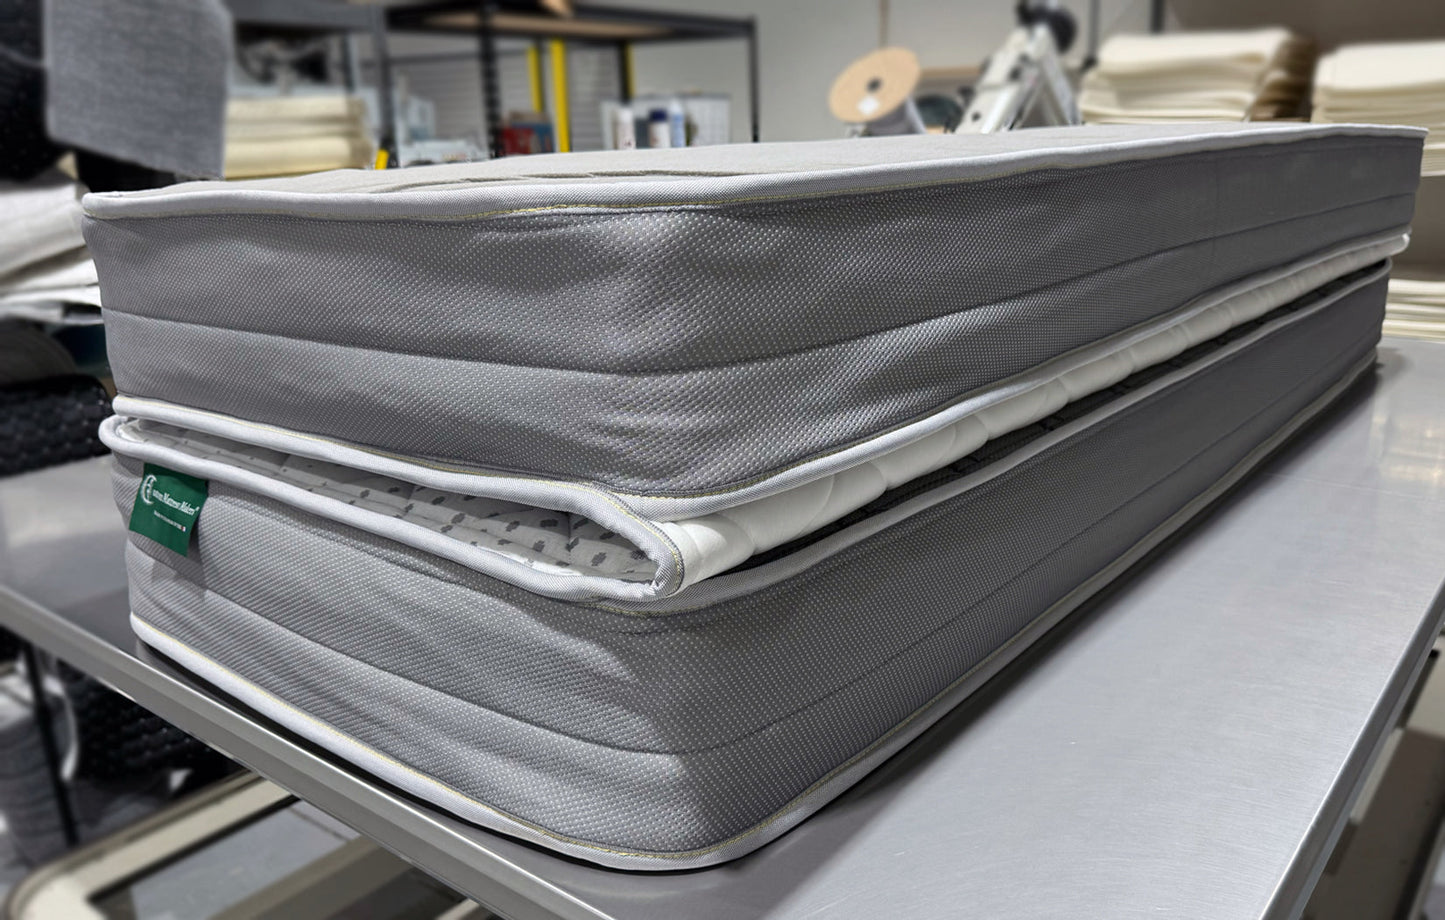 Hinged, custom coil mattress - 44" x 75" w/ 2 angle cuts